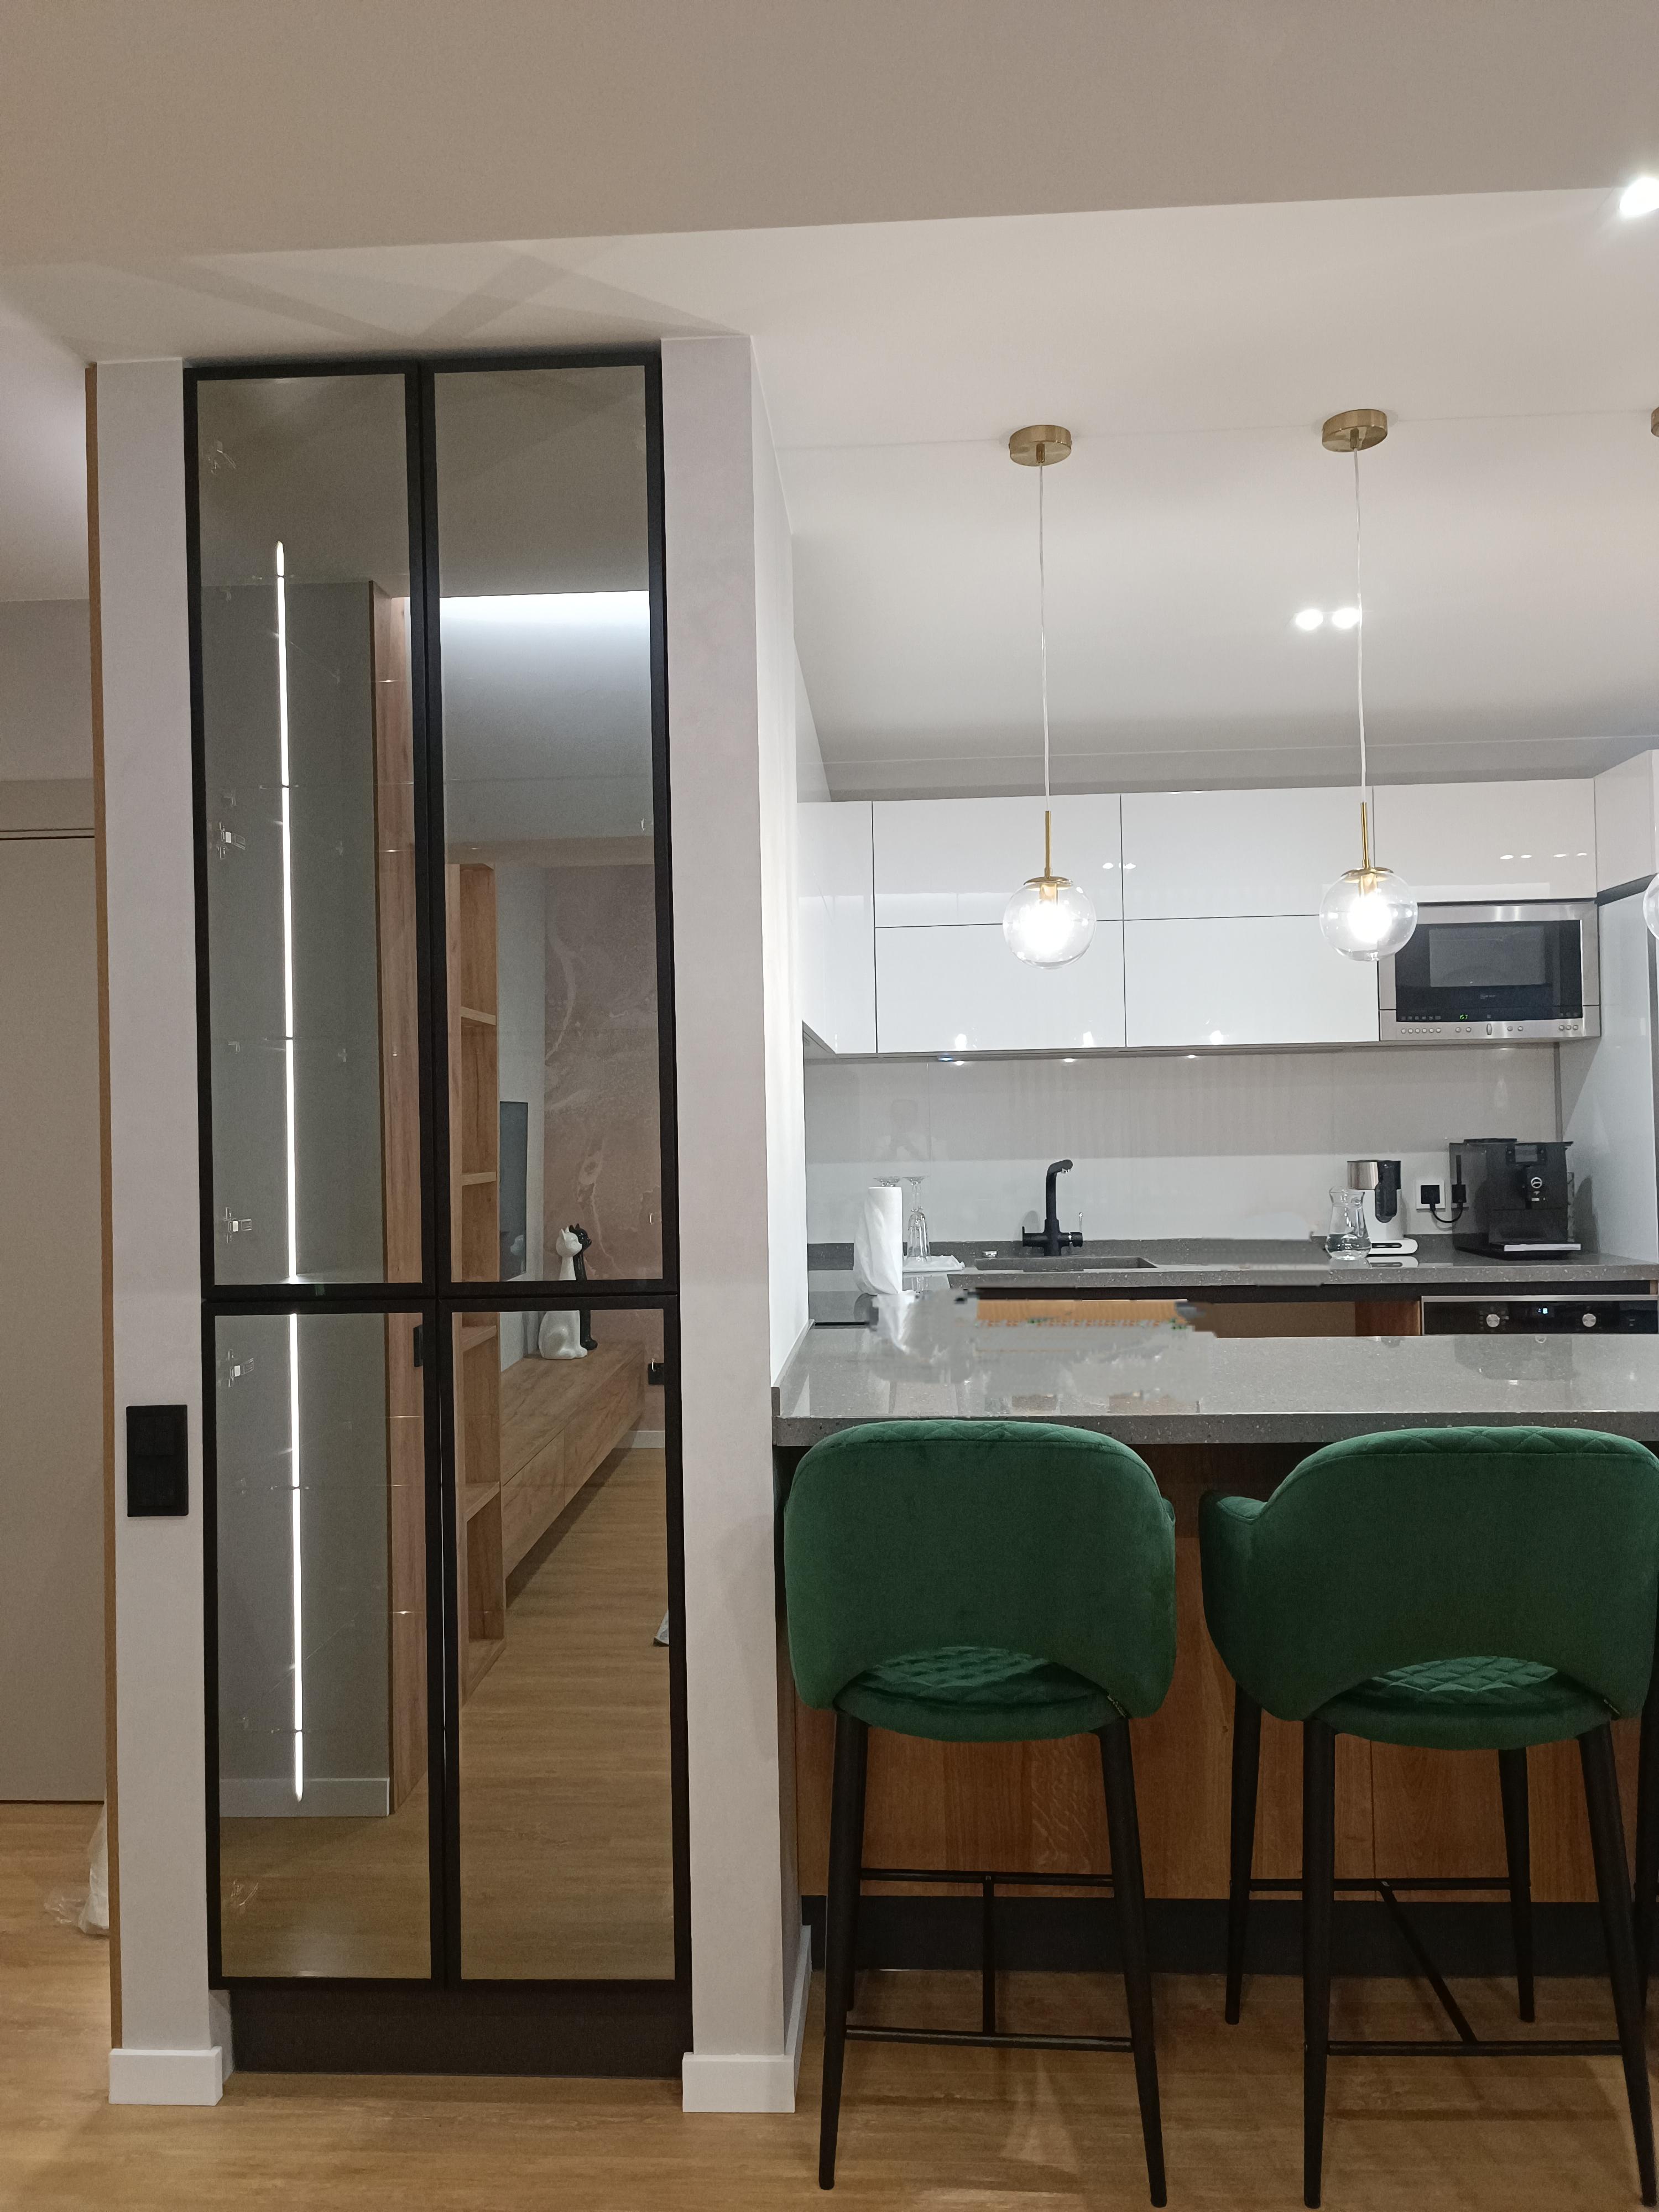 Интерьер кухни с перегородкой раздвижной и зеркалом на двери